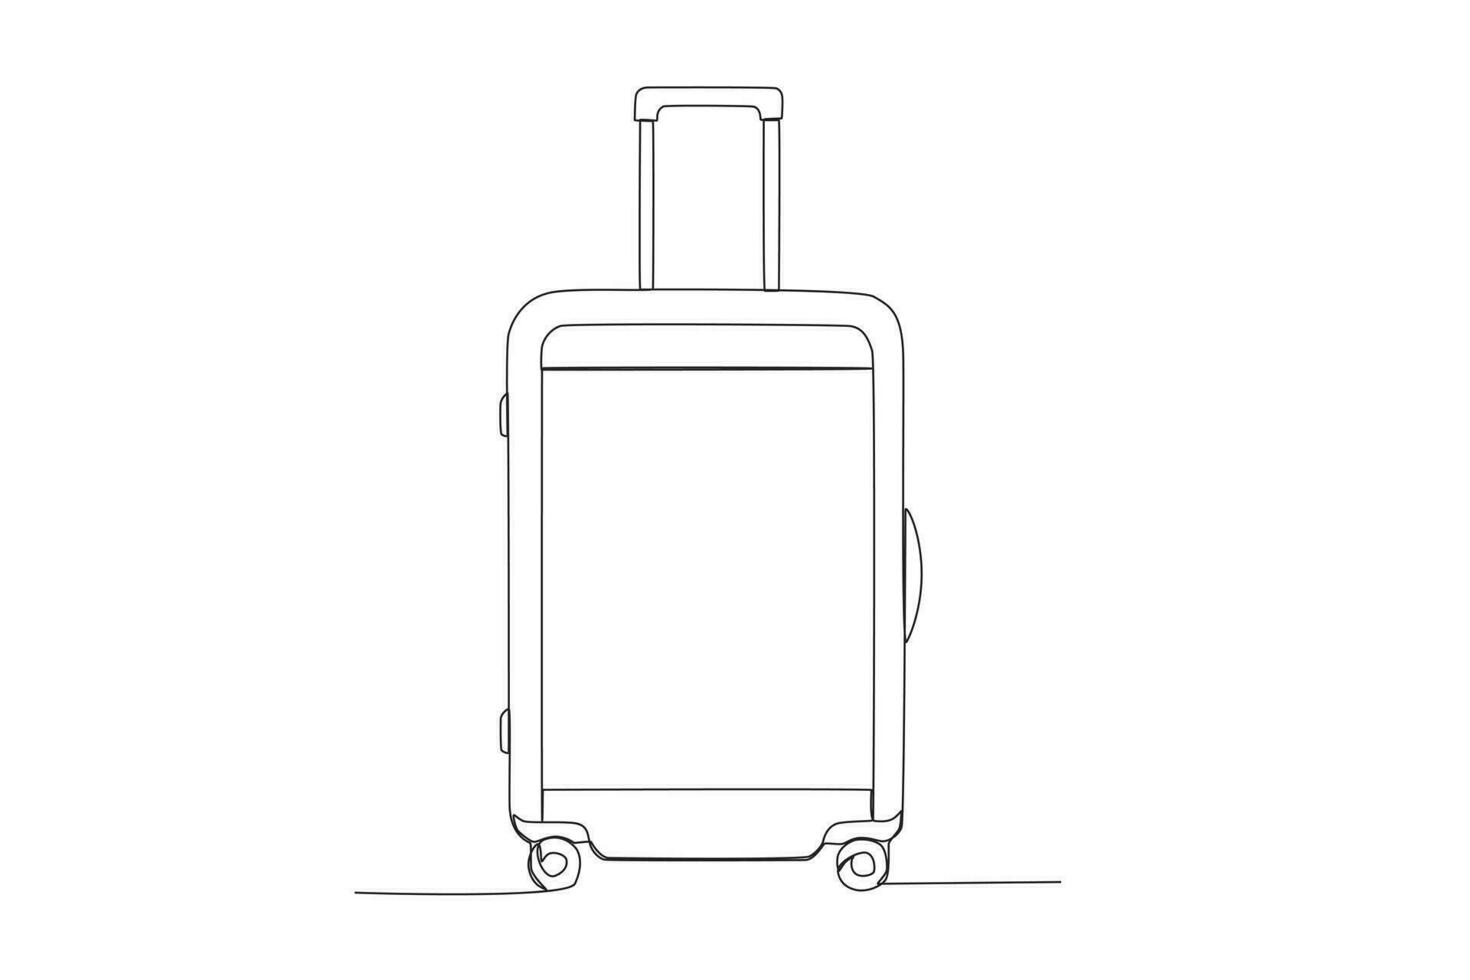 uno continuo línea dibujo de maleta clásico de viaje articulo concepto soltero línea dibujar gráfico diseño vector ilustración